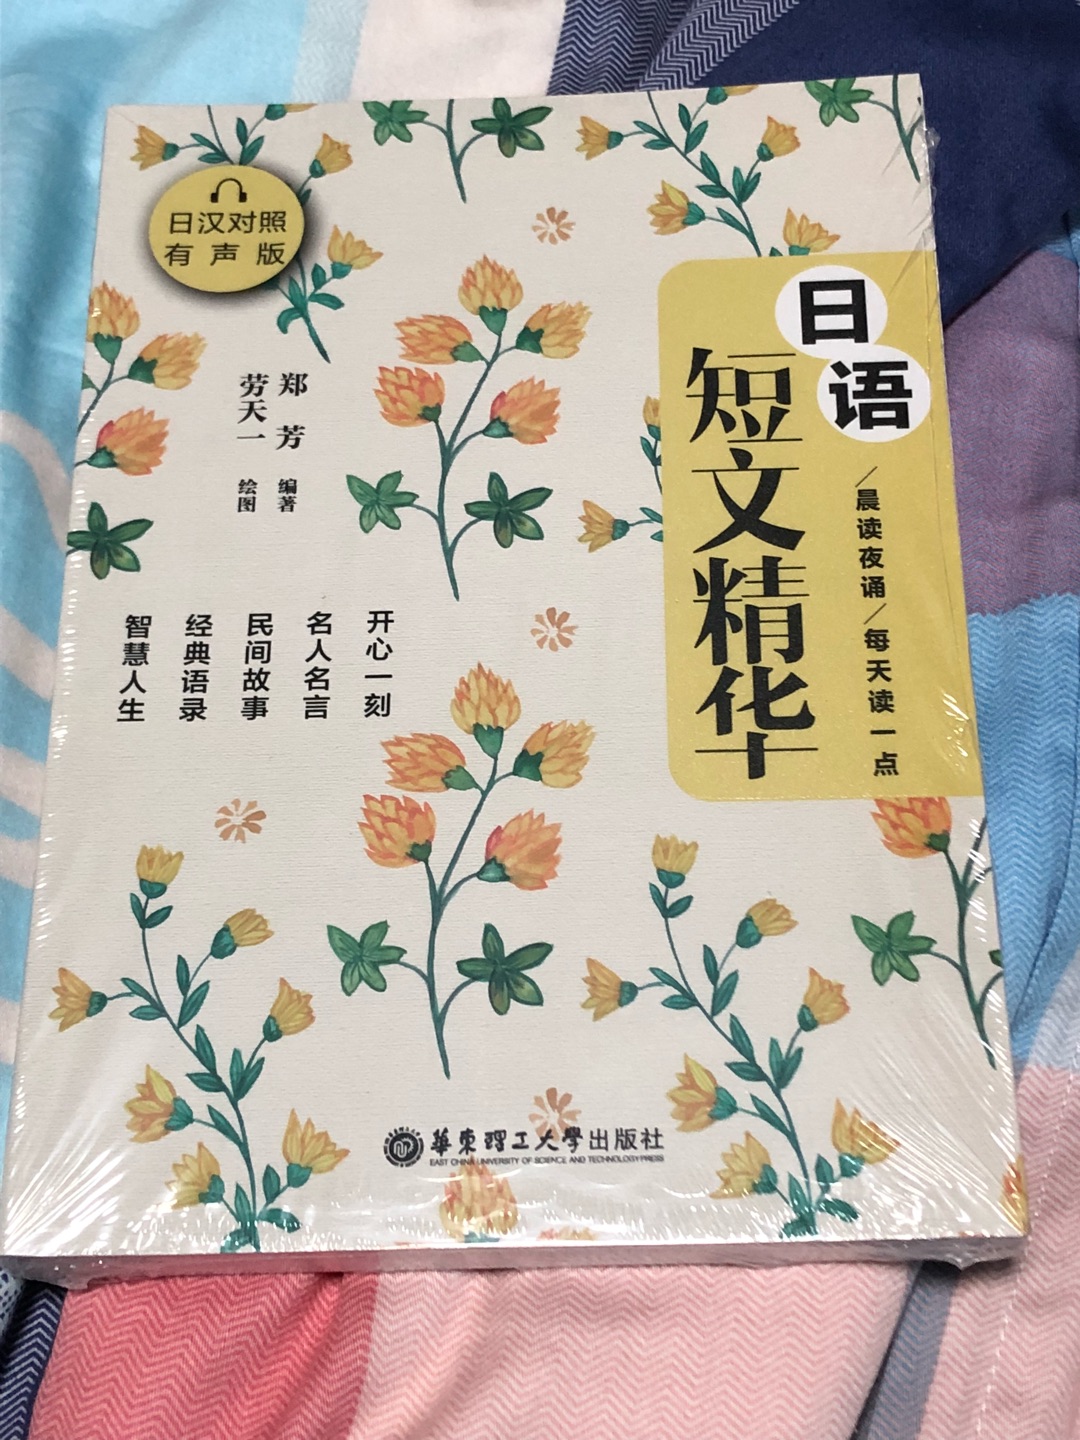 训练日语阅读用的，应该蛮有用的，书籍质量也不错，整体满意。